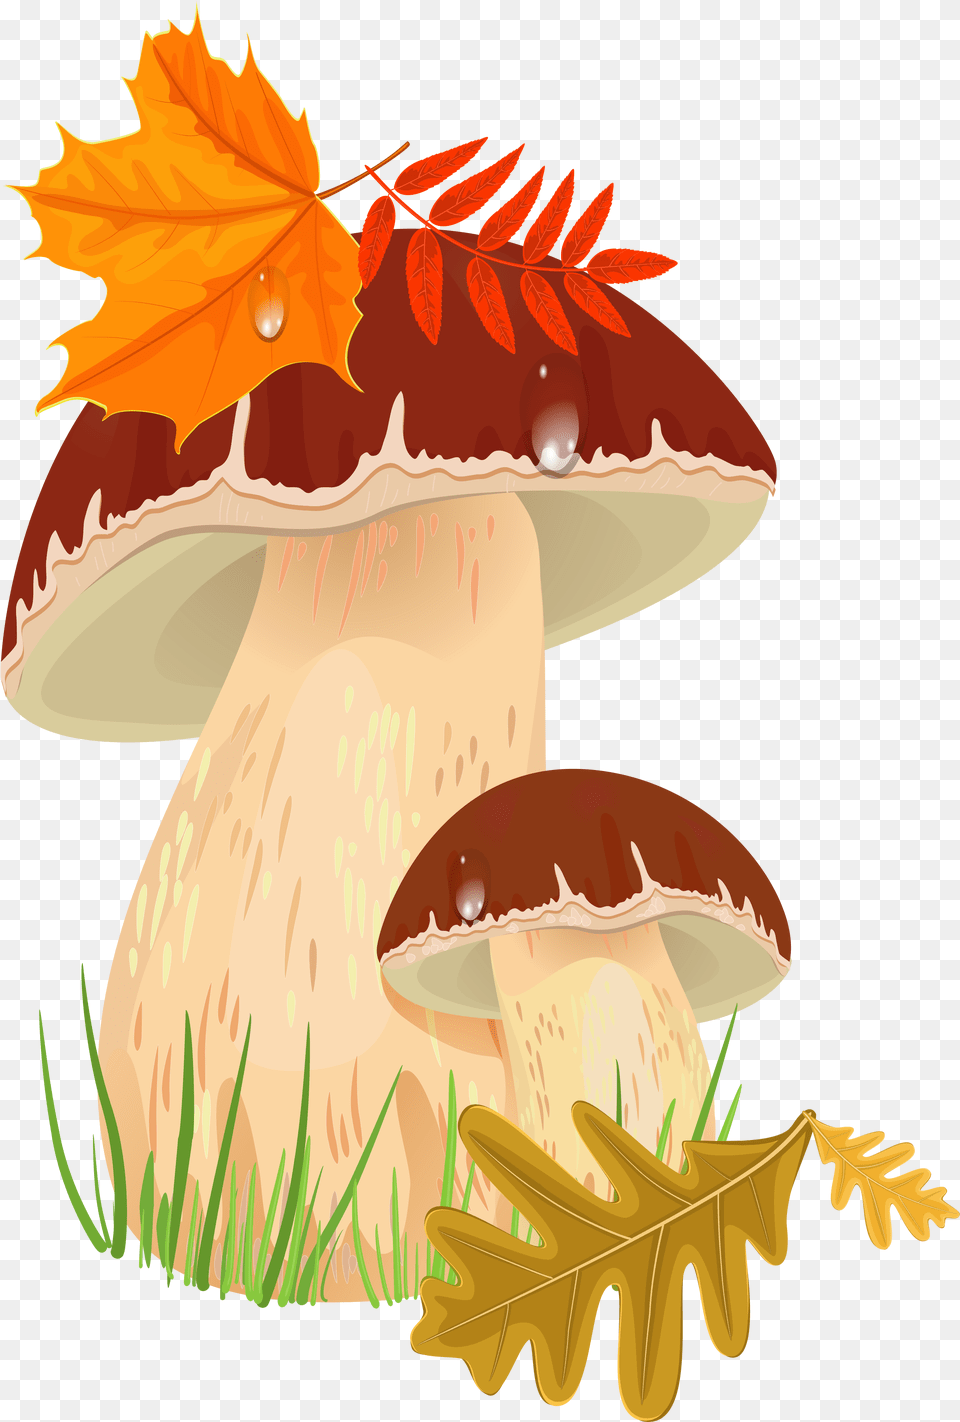 Transparent Toadstool Autumn Mushrooms, Leaf, Plant, Fungus, Mushroom Png